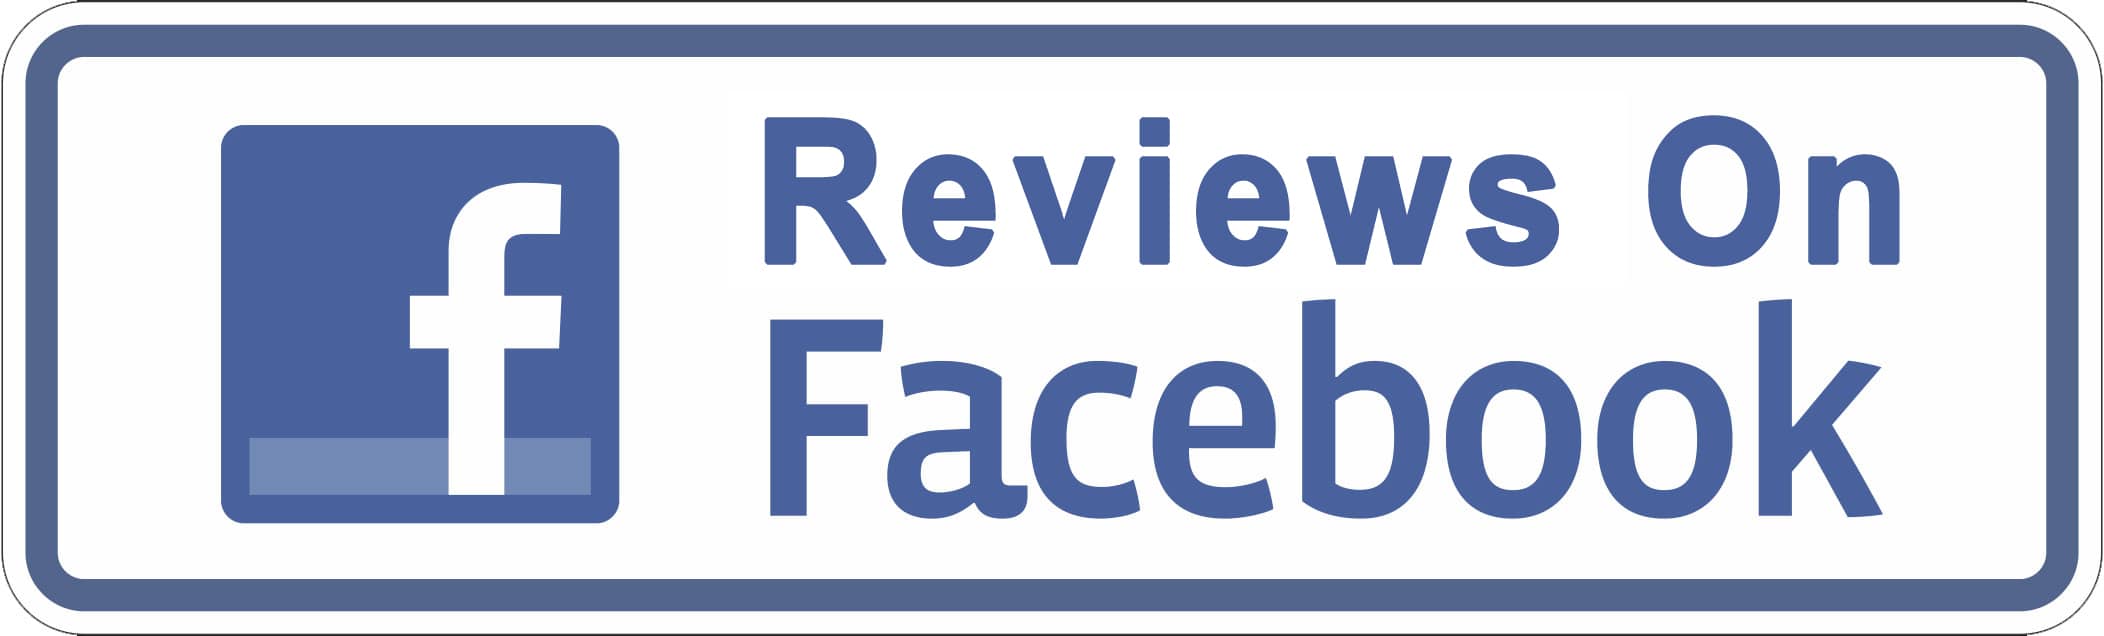 Facebook Review Logo - Grand Blanc BMW Write A Review